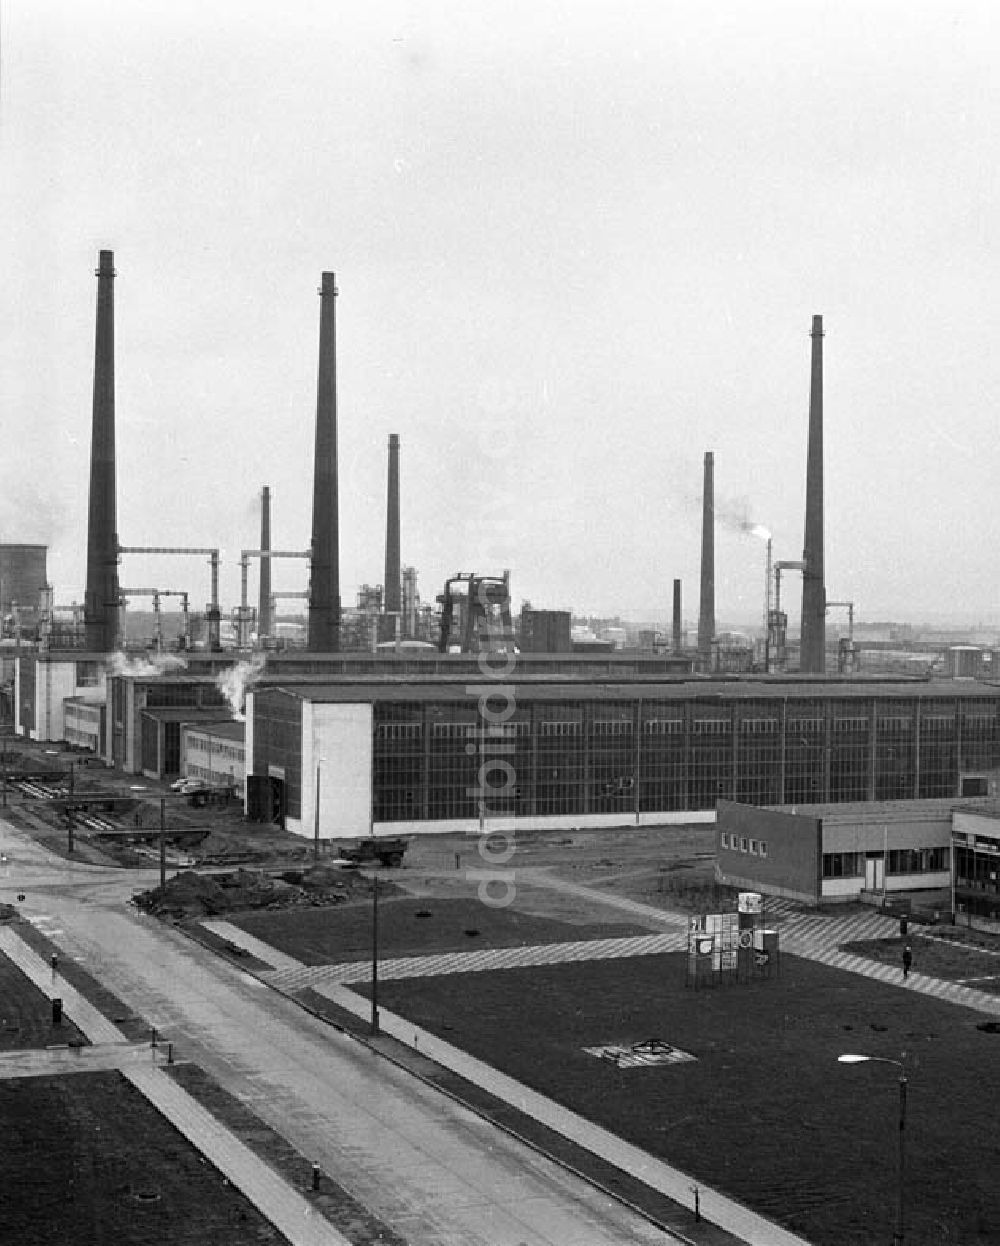 Schwedt: Dezember 1965 Erdölverarbeitungswerk Schwedt/Oder heute: PCK Raffinerie GmbH, Passower Chaussee 111, 16303 Schwedt/Oder, Tel